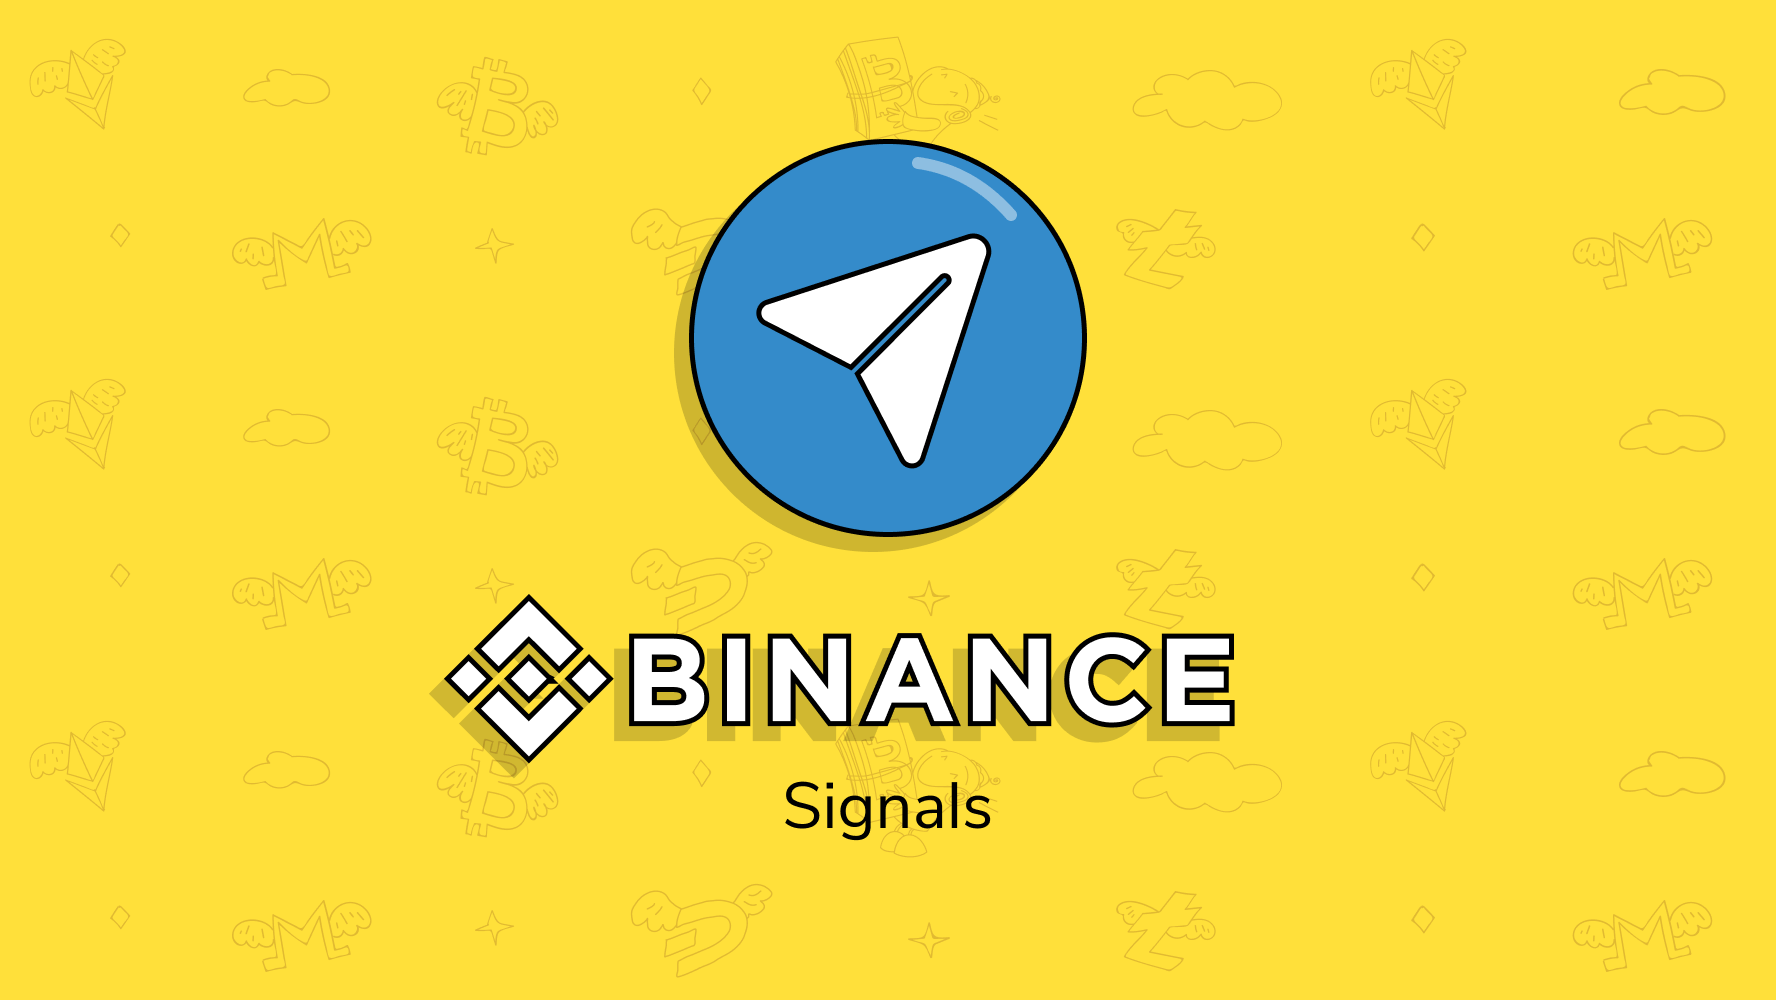 crypto signals binance telegram